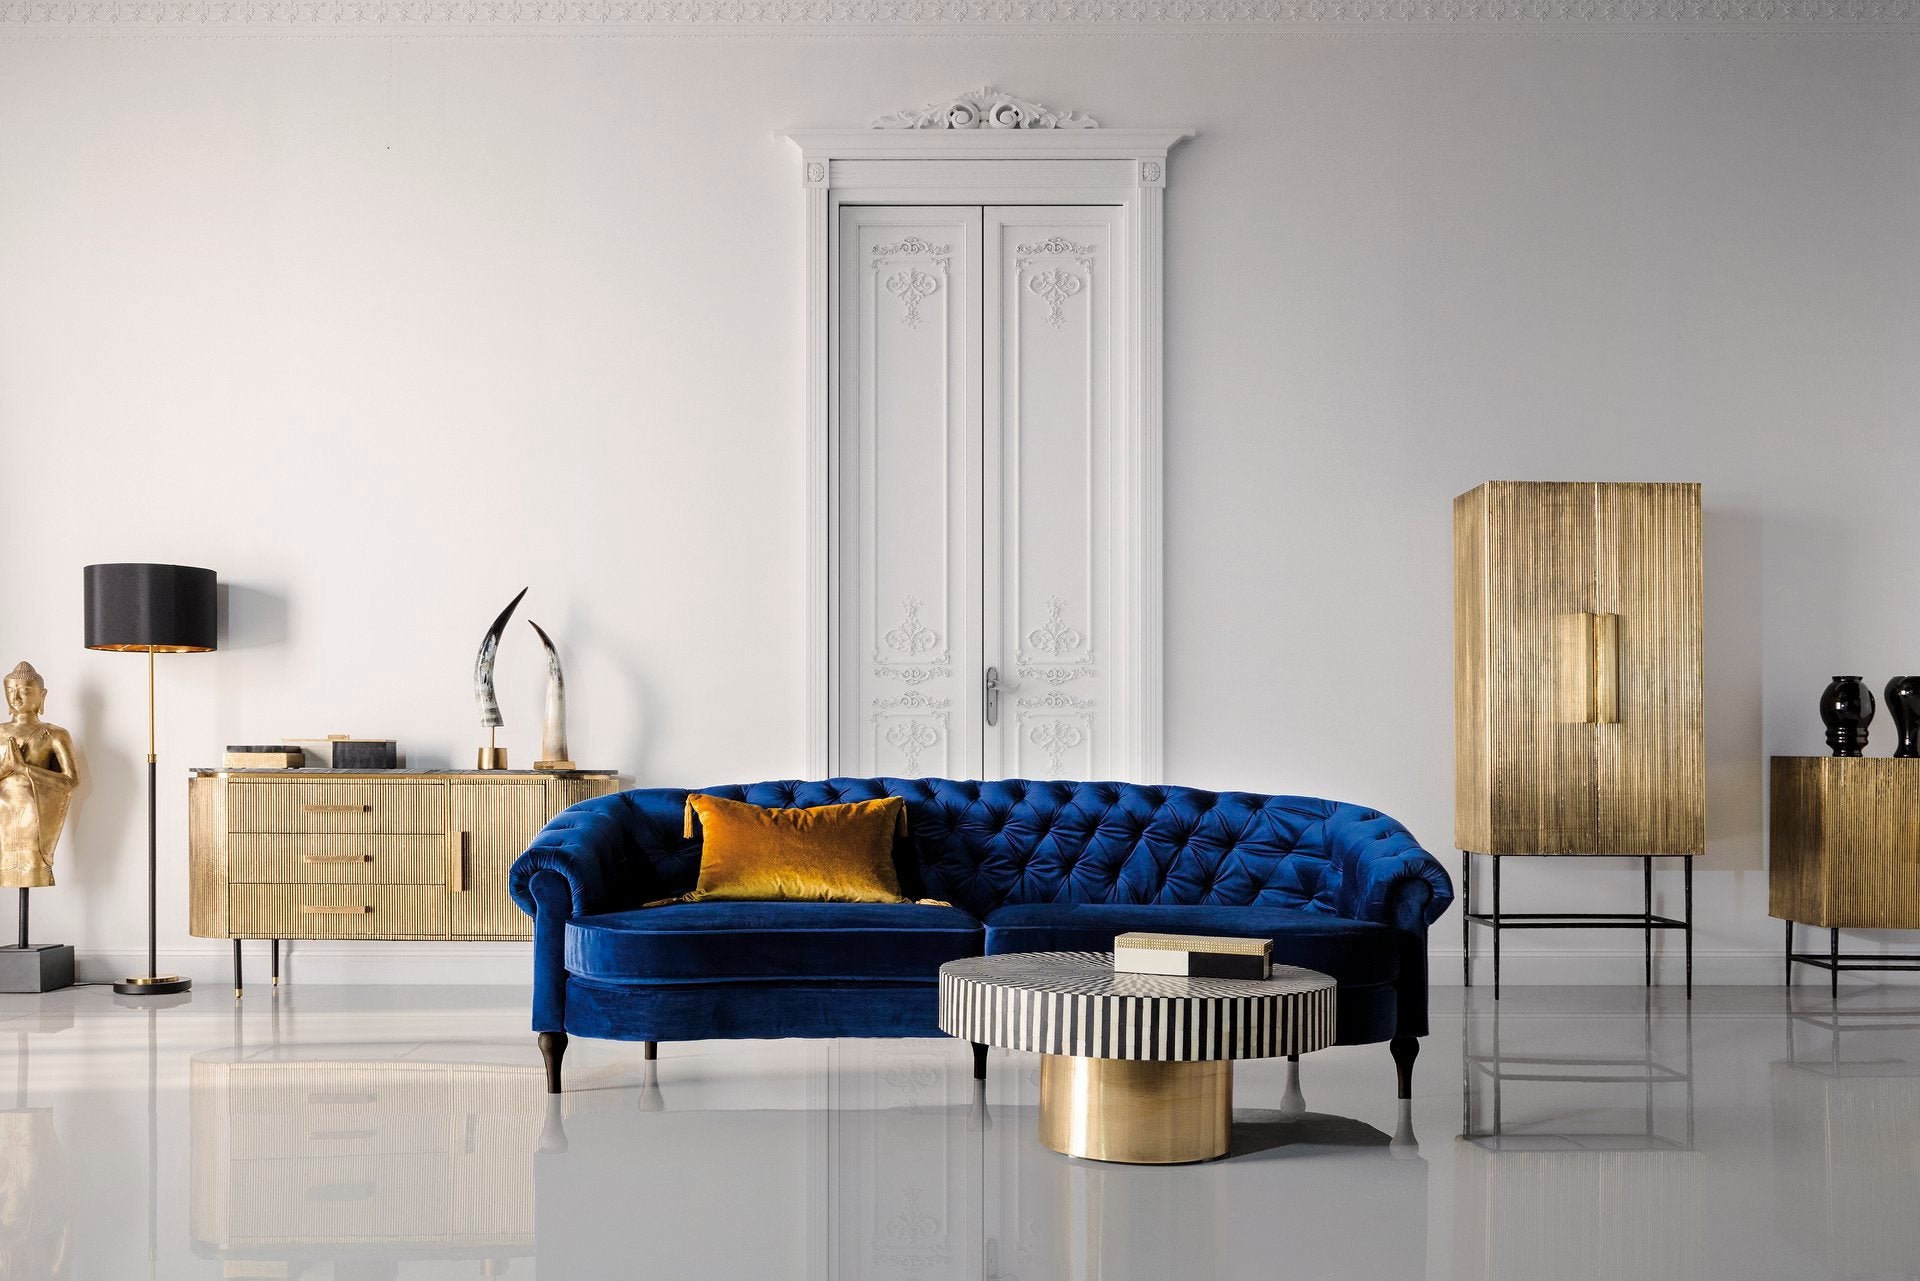 Set canapea si fotolii - creează un decor sofisticat în casa ta!